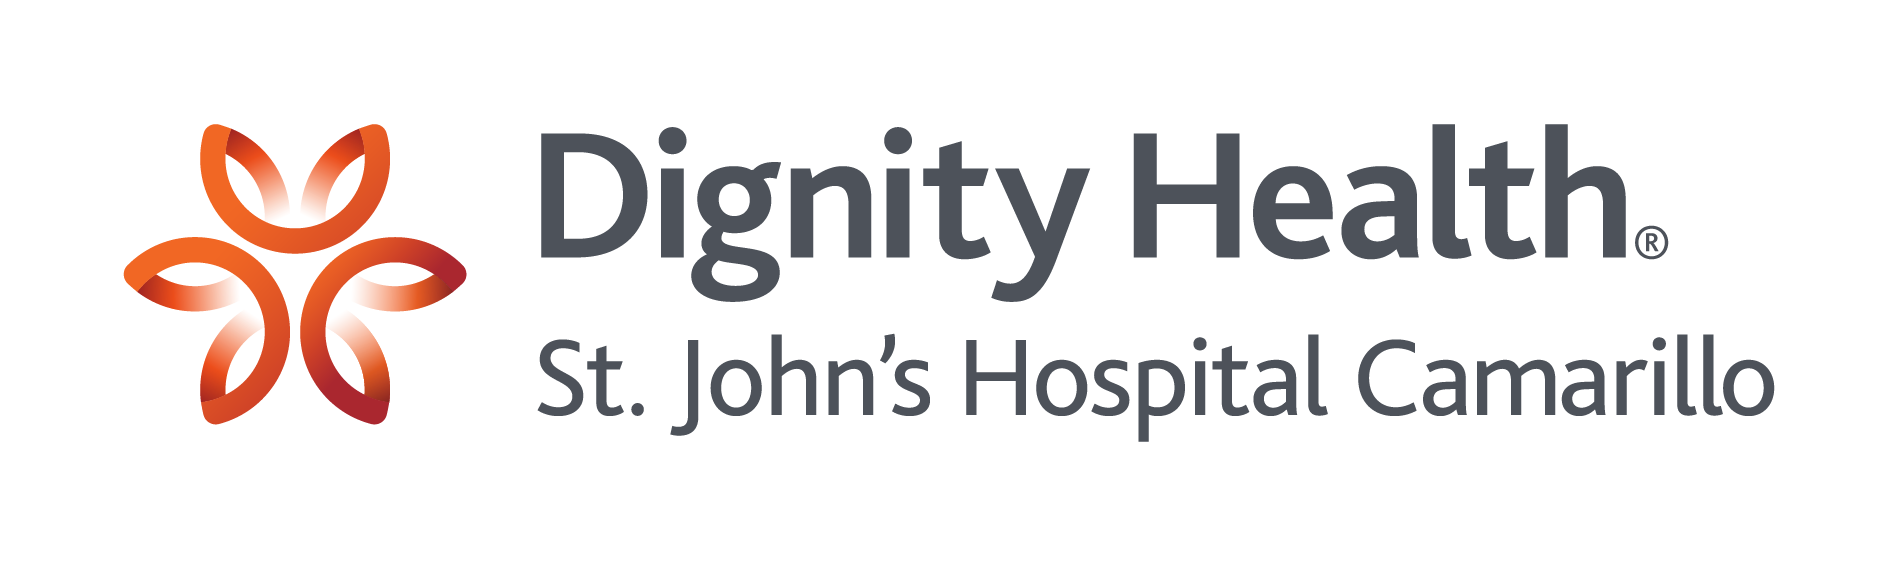 Dignity Health - St. John's Hospital Camarillo